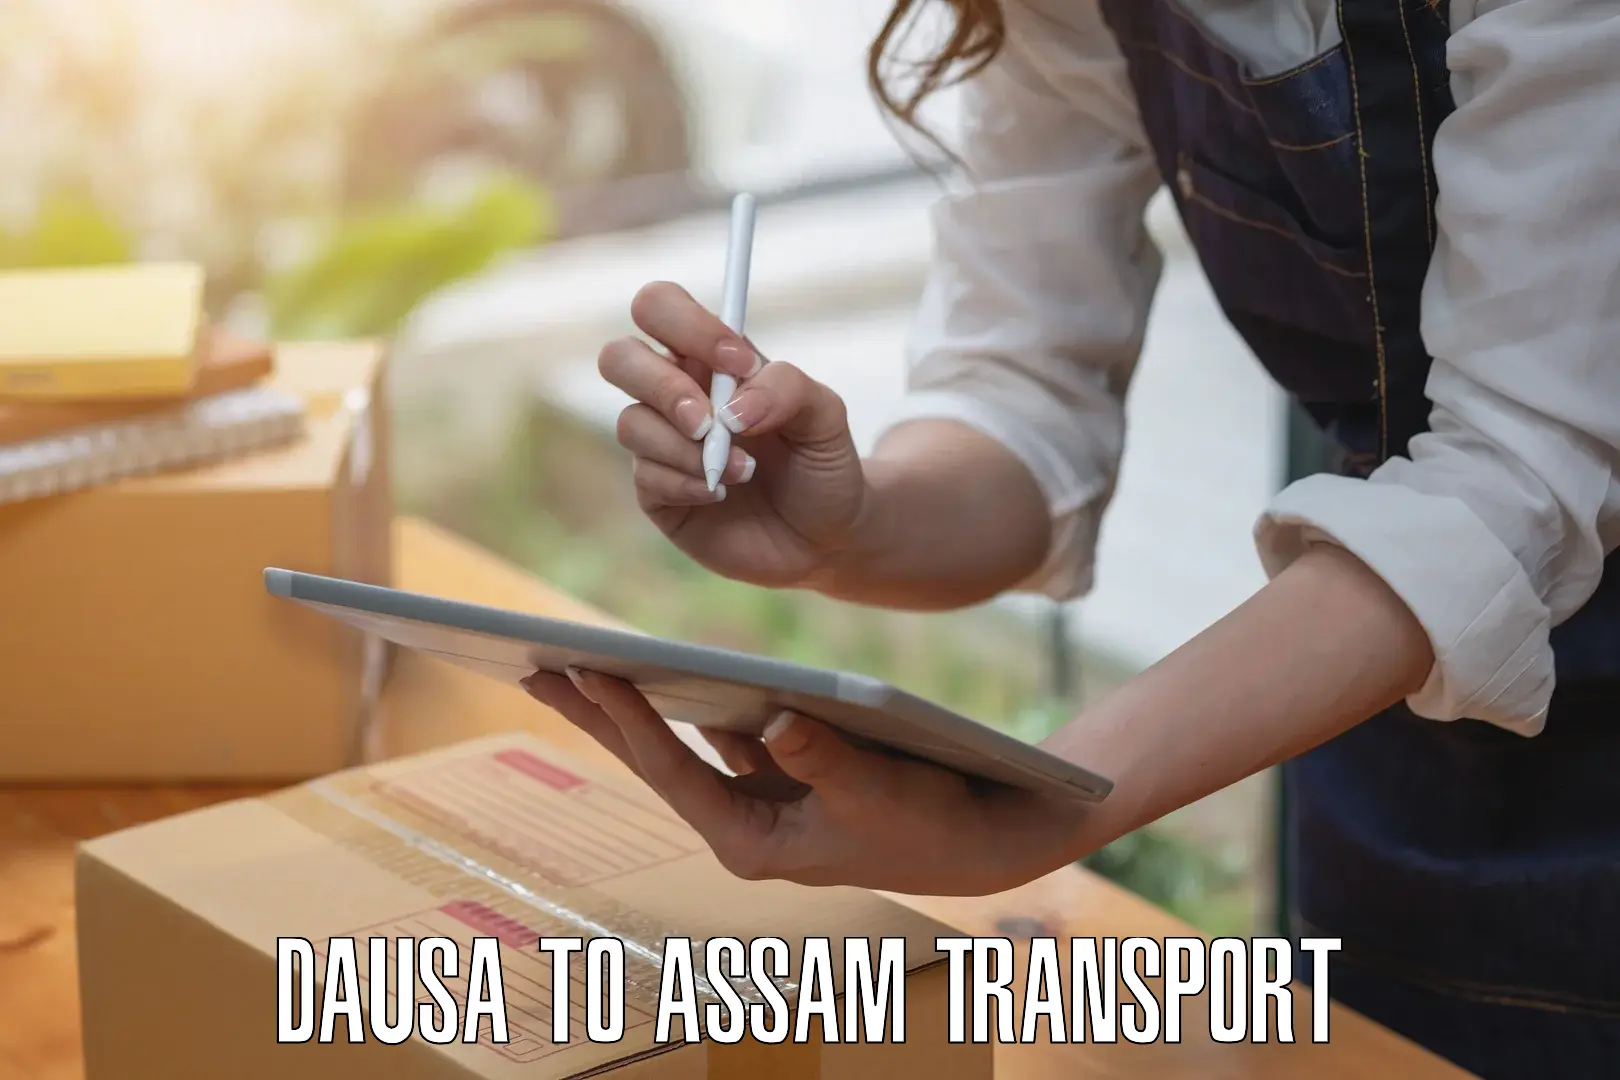 Furniture transport service Dausa to Rowta